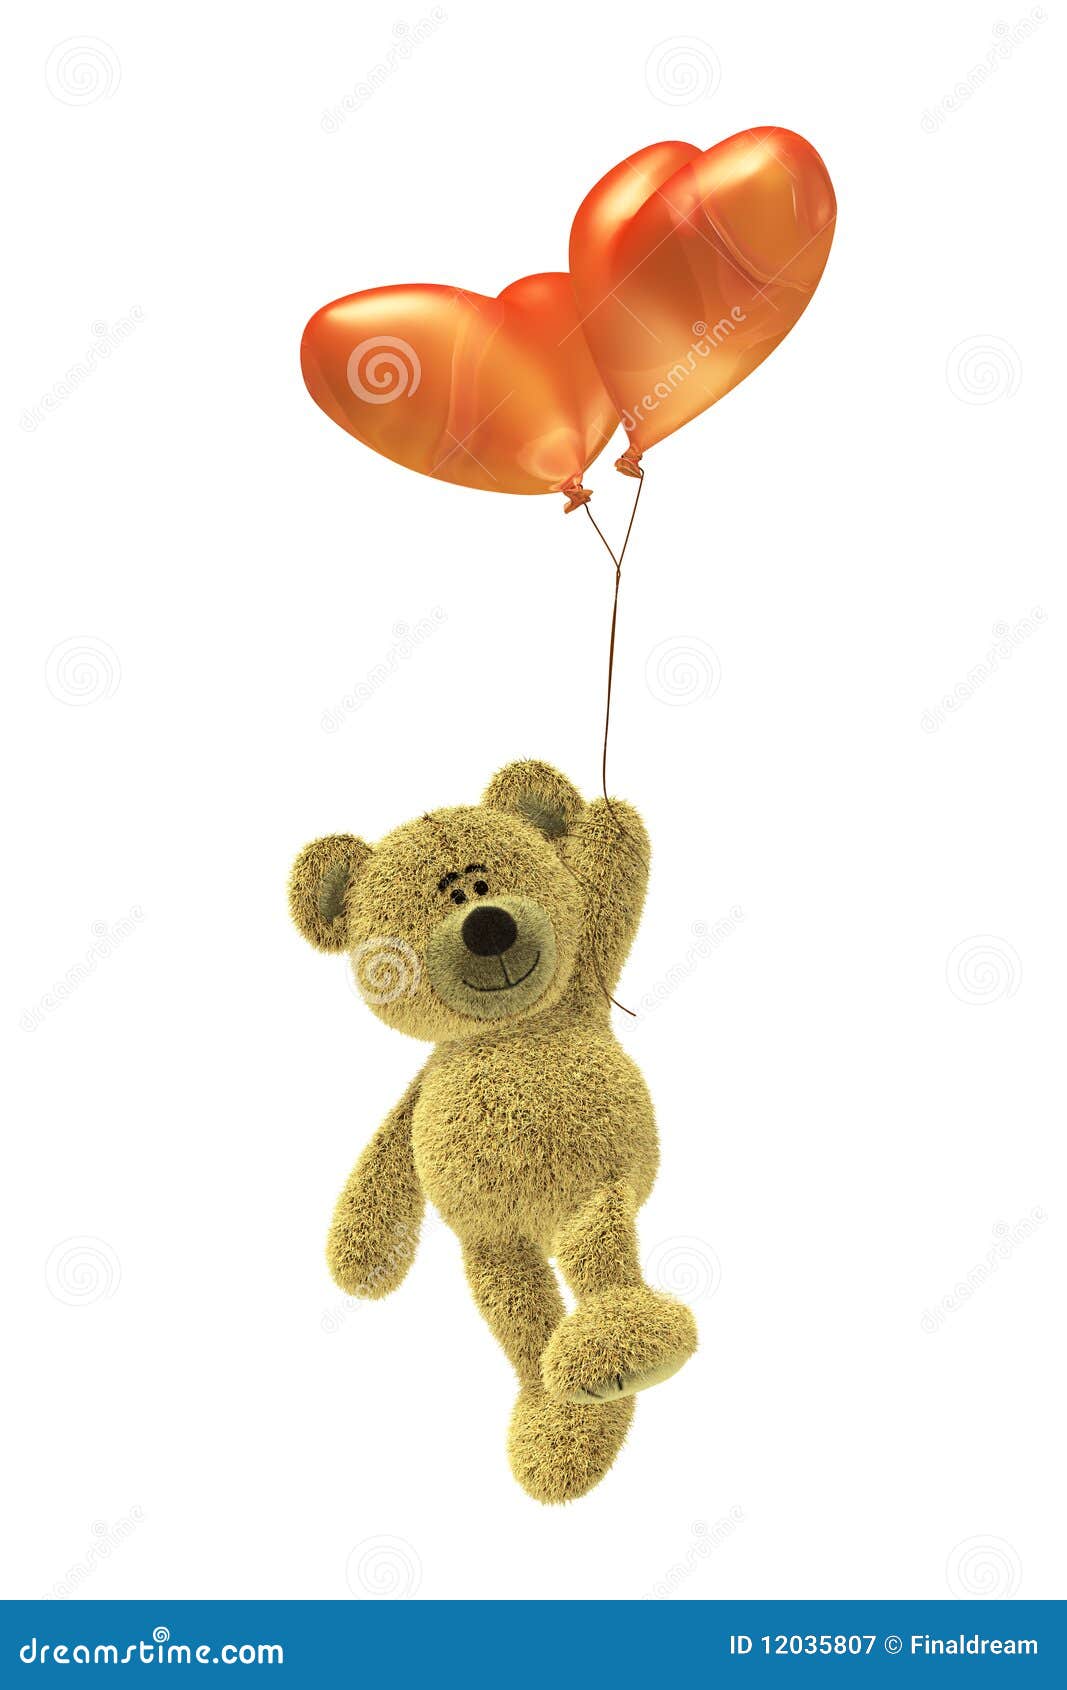 nhi bear with heartd balloon flying